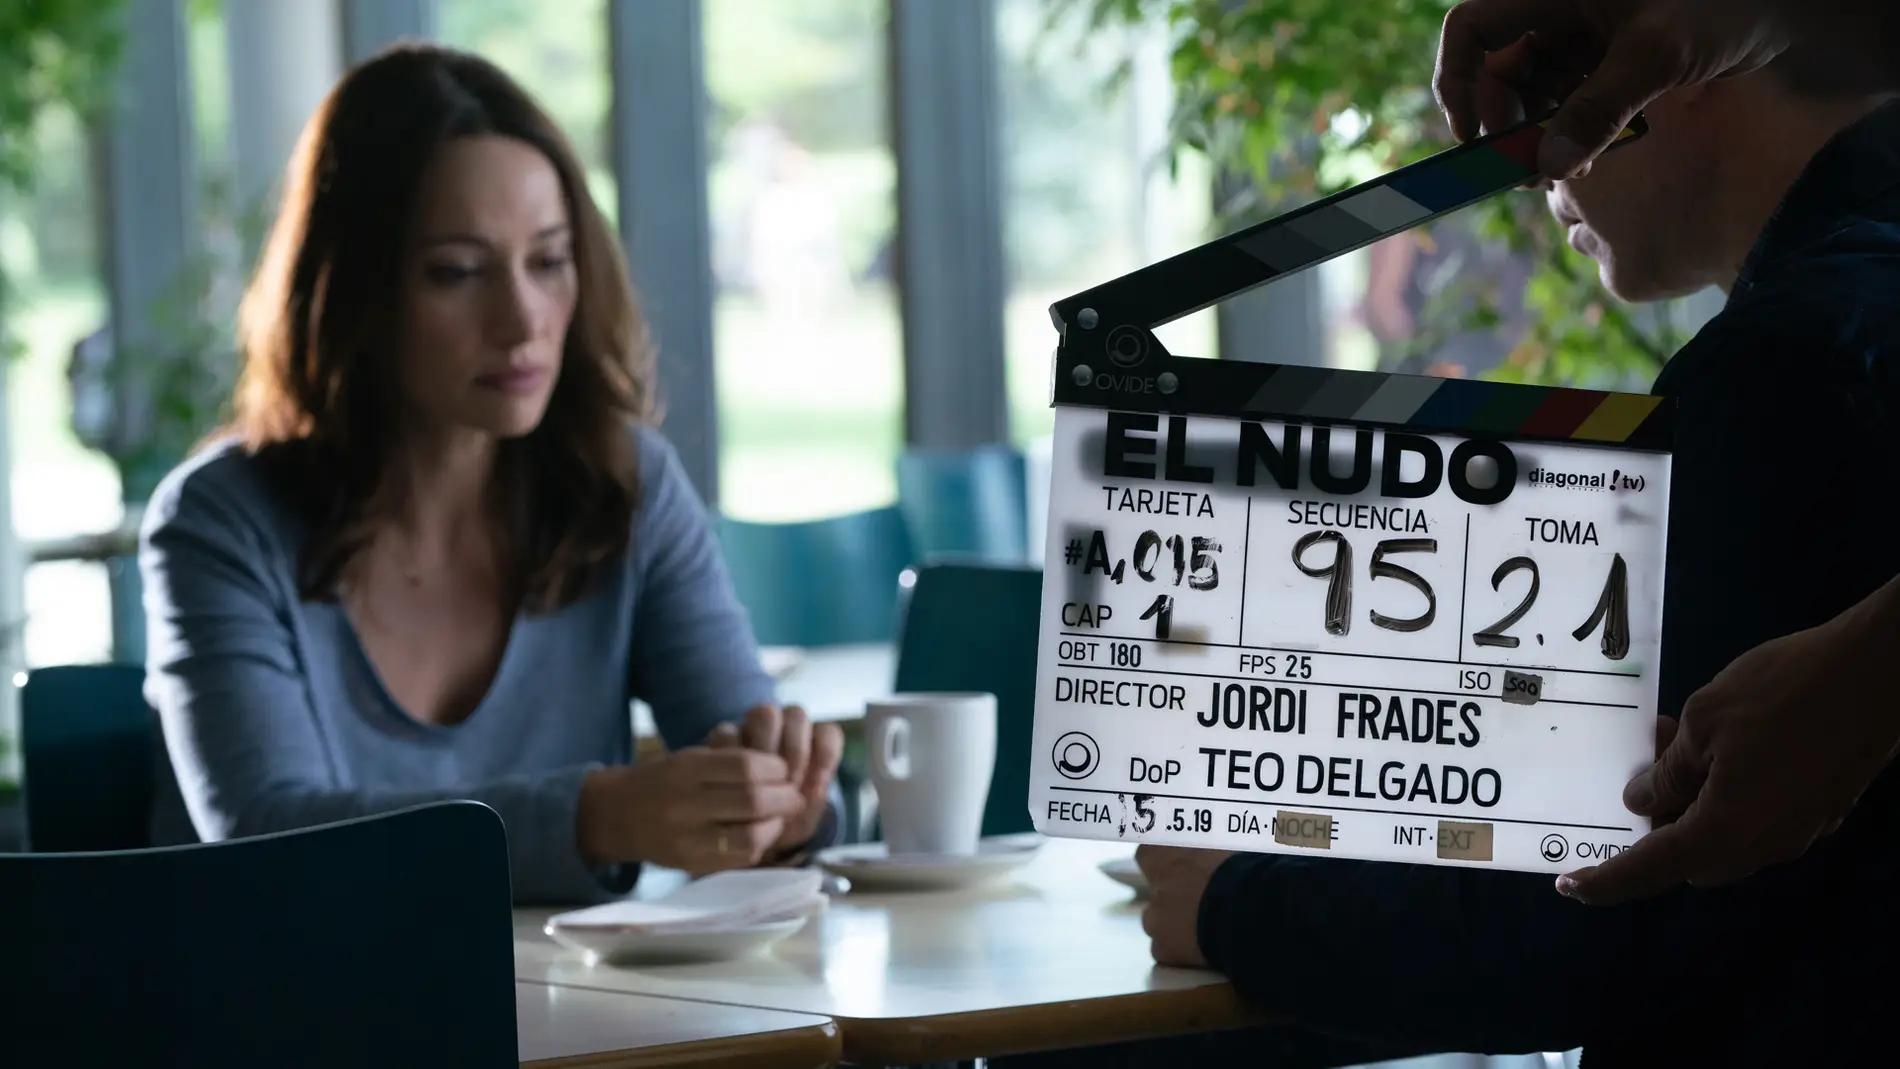 Natalia Verbeke en el rodaje de 'El Nudo'